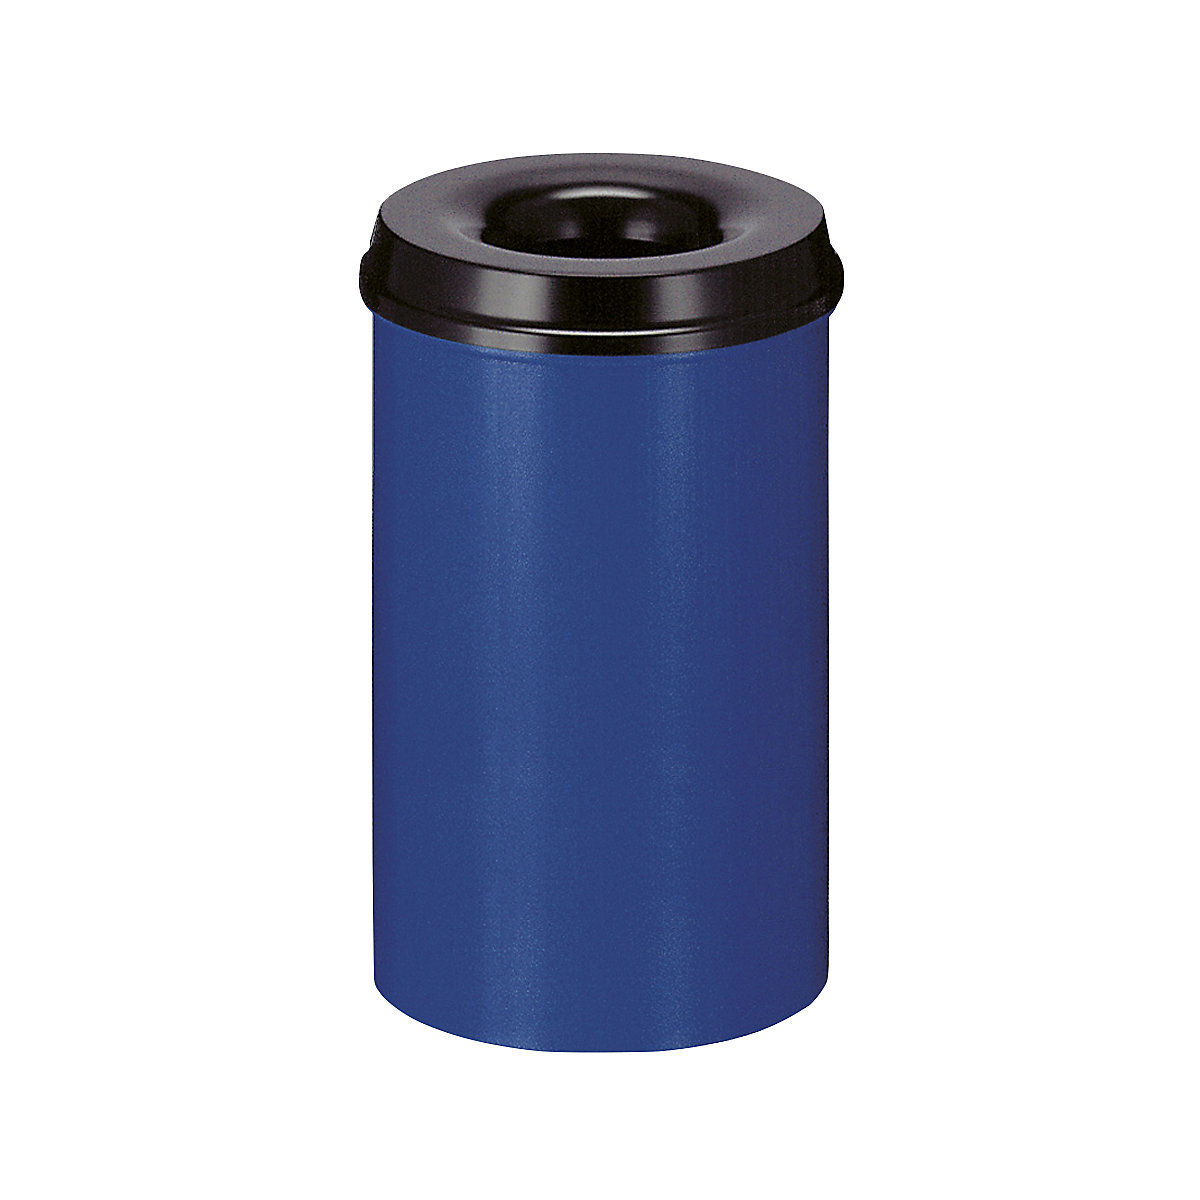 Corbeille à papier auto-extinguible, capacité 20 l, h x Ø 426 x 260 mm, corps bleu / étouffoir noir